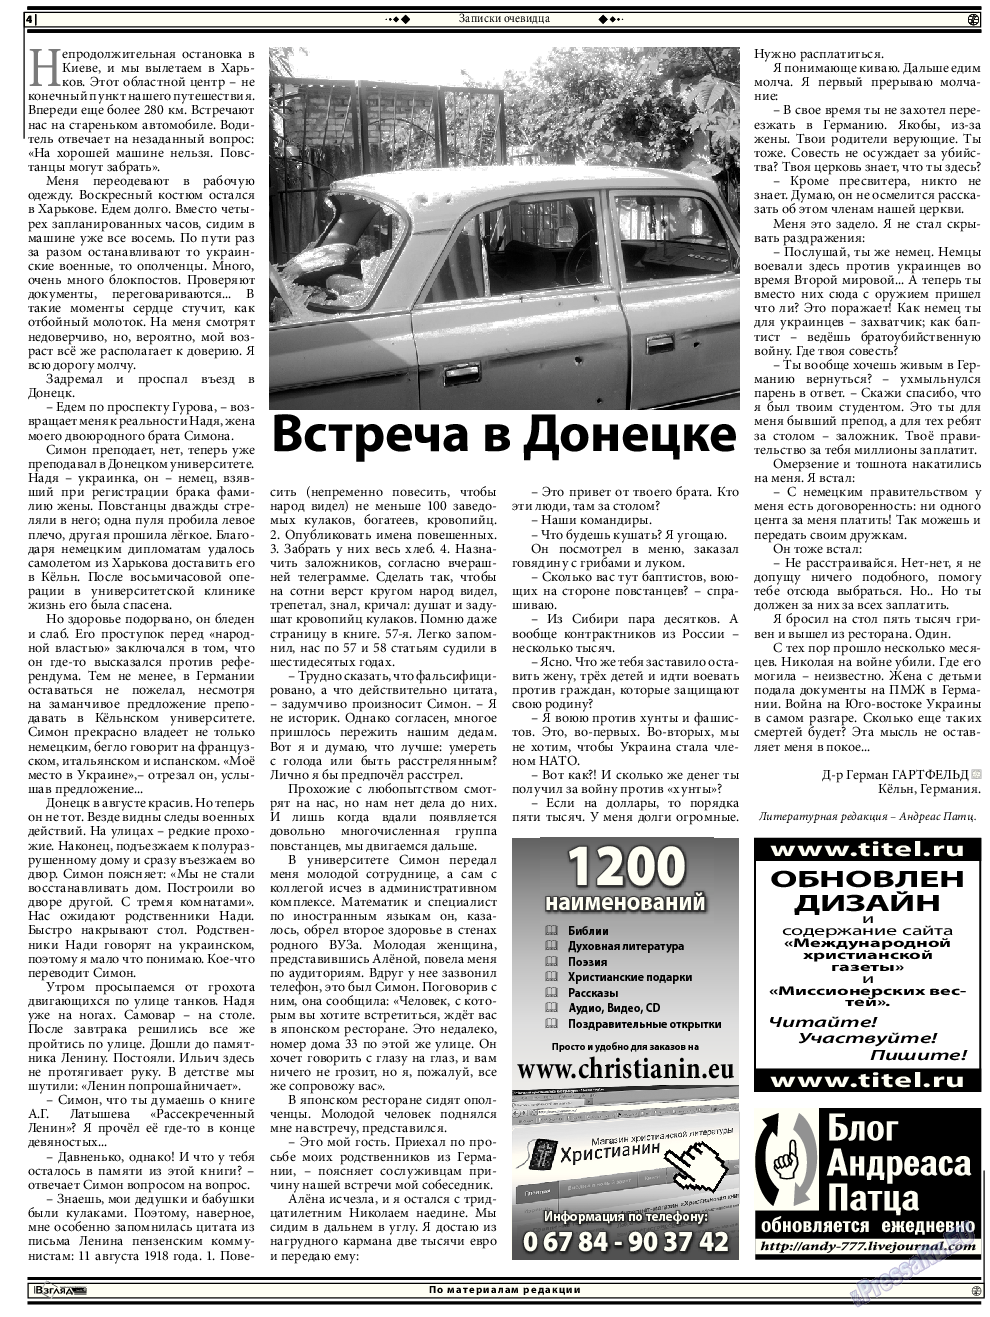 Христианская газета, газета. 2014 №12 стр.18